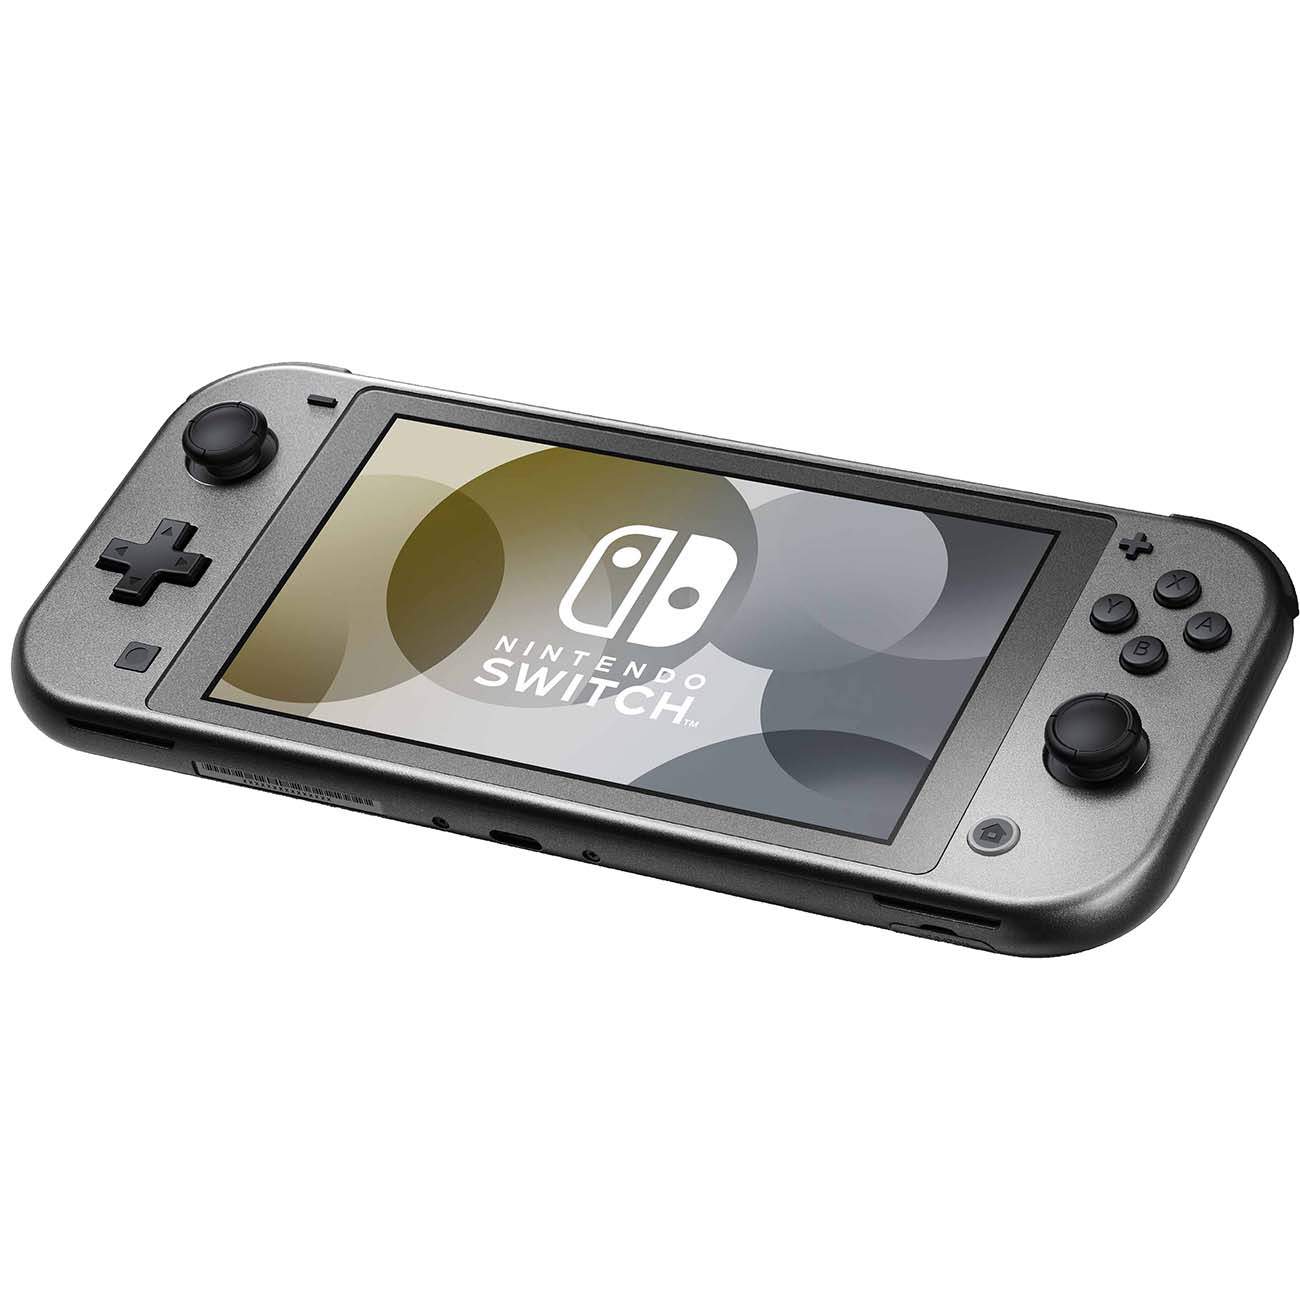 Игровая консоль Nintendo Switch Lite Диалга и Палкия